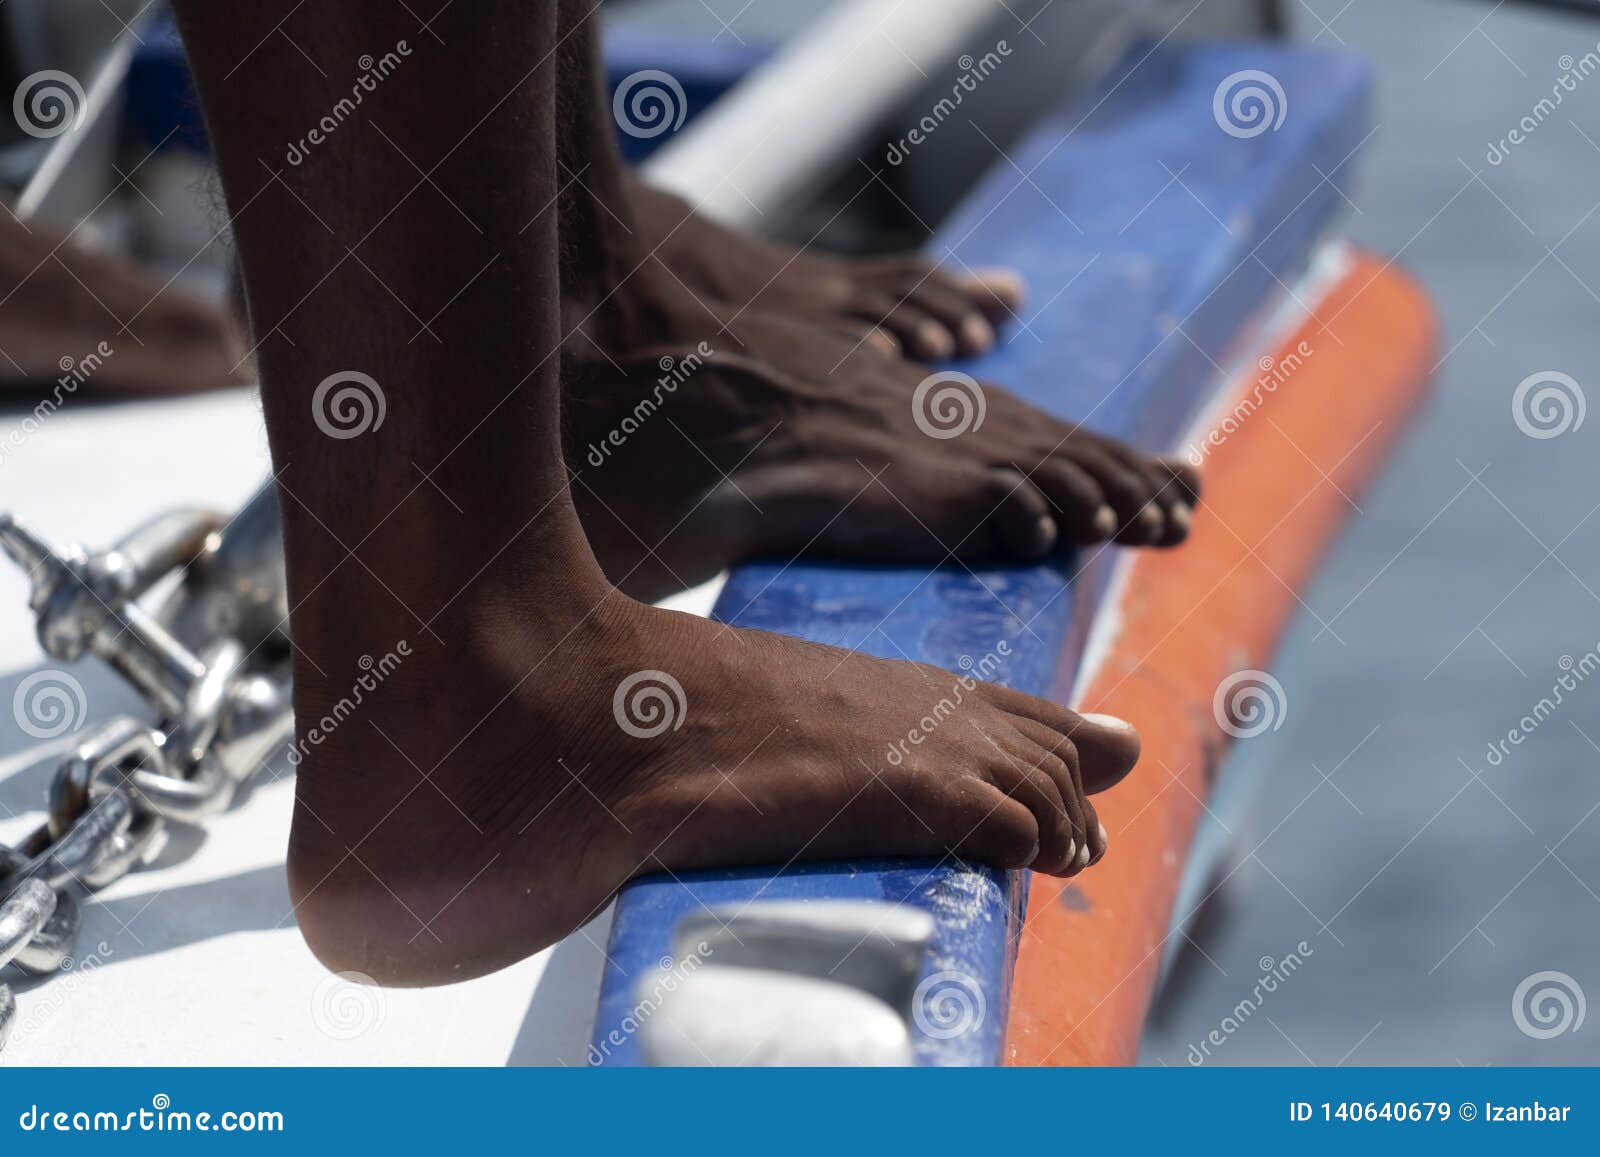 Ноги чернокожих. Ступни чернокожих. Негритянские ножки. Негритянские ступни.